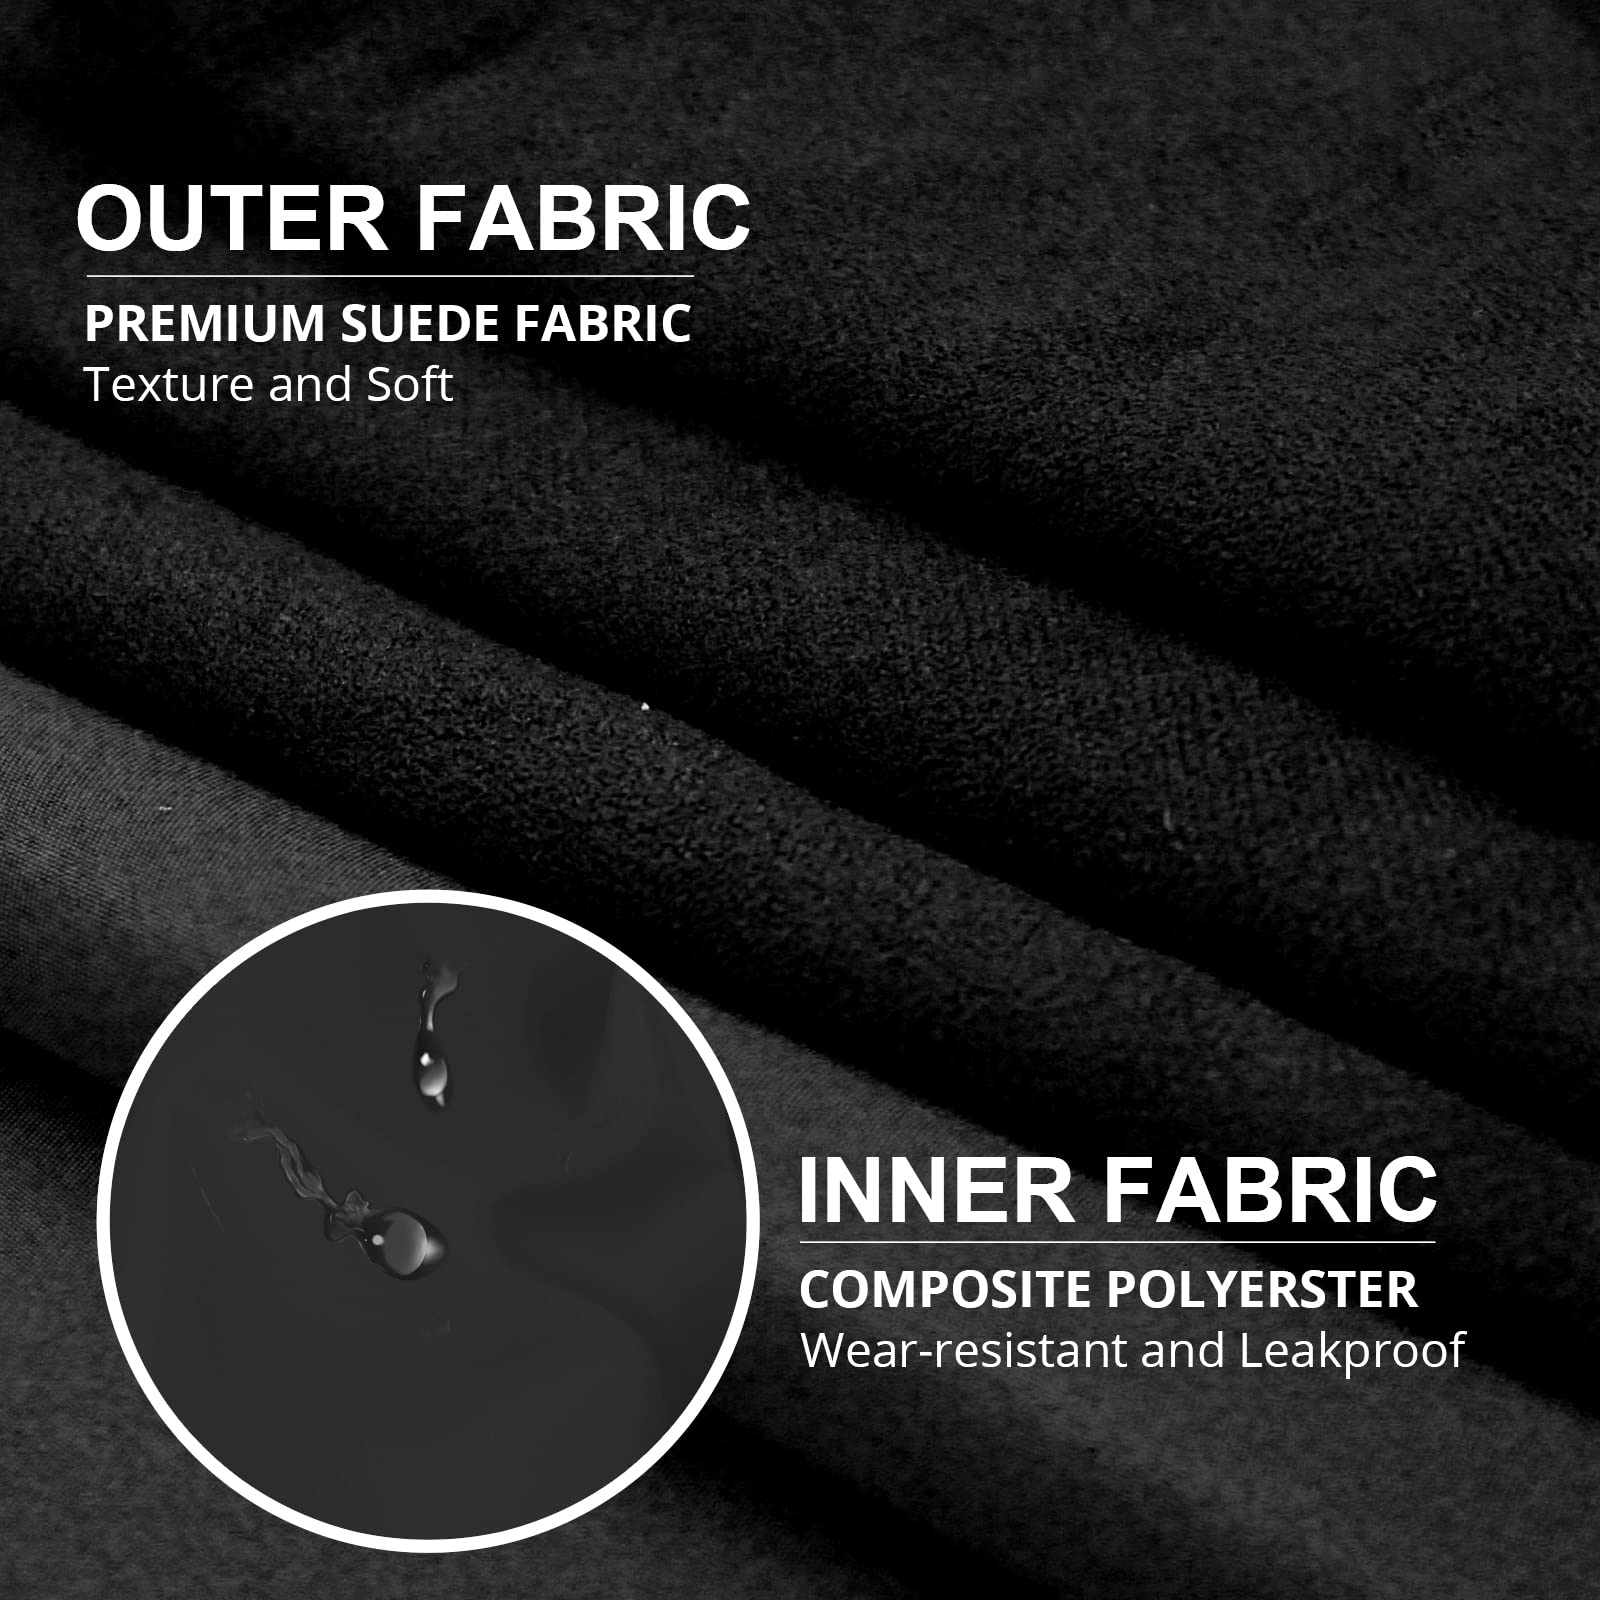 Purse Organizer insert with Premium Fabrics, Bag India